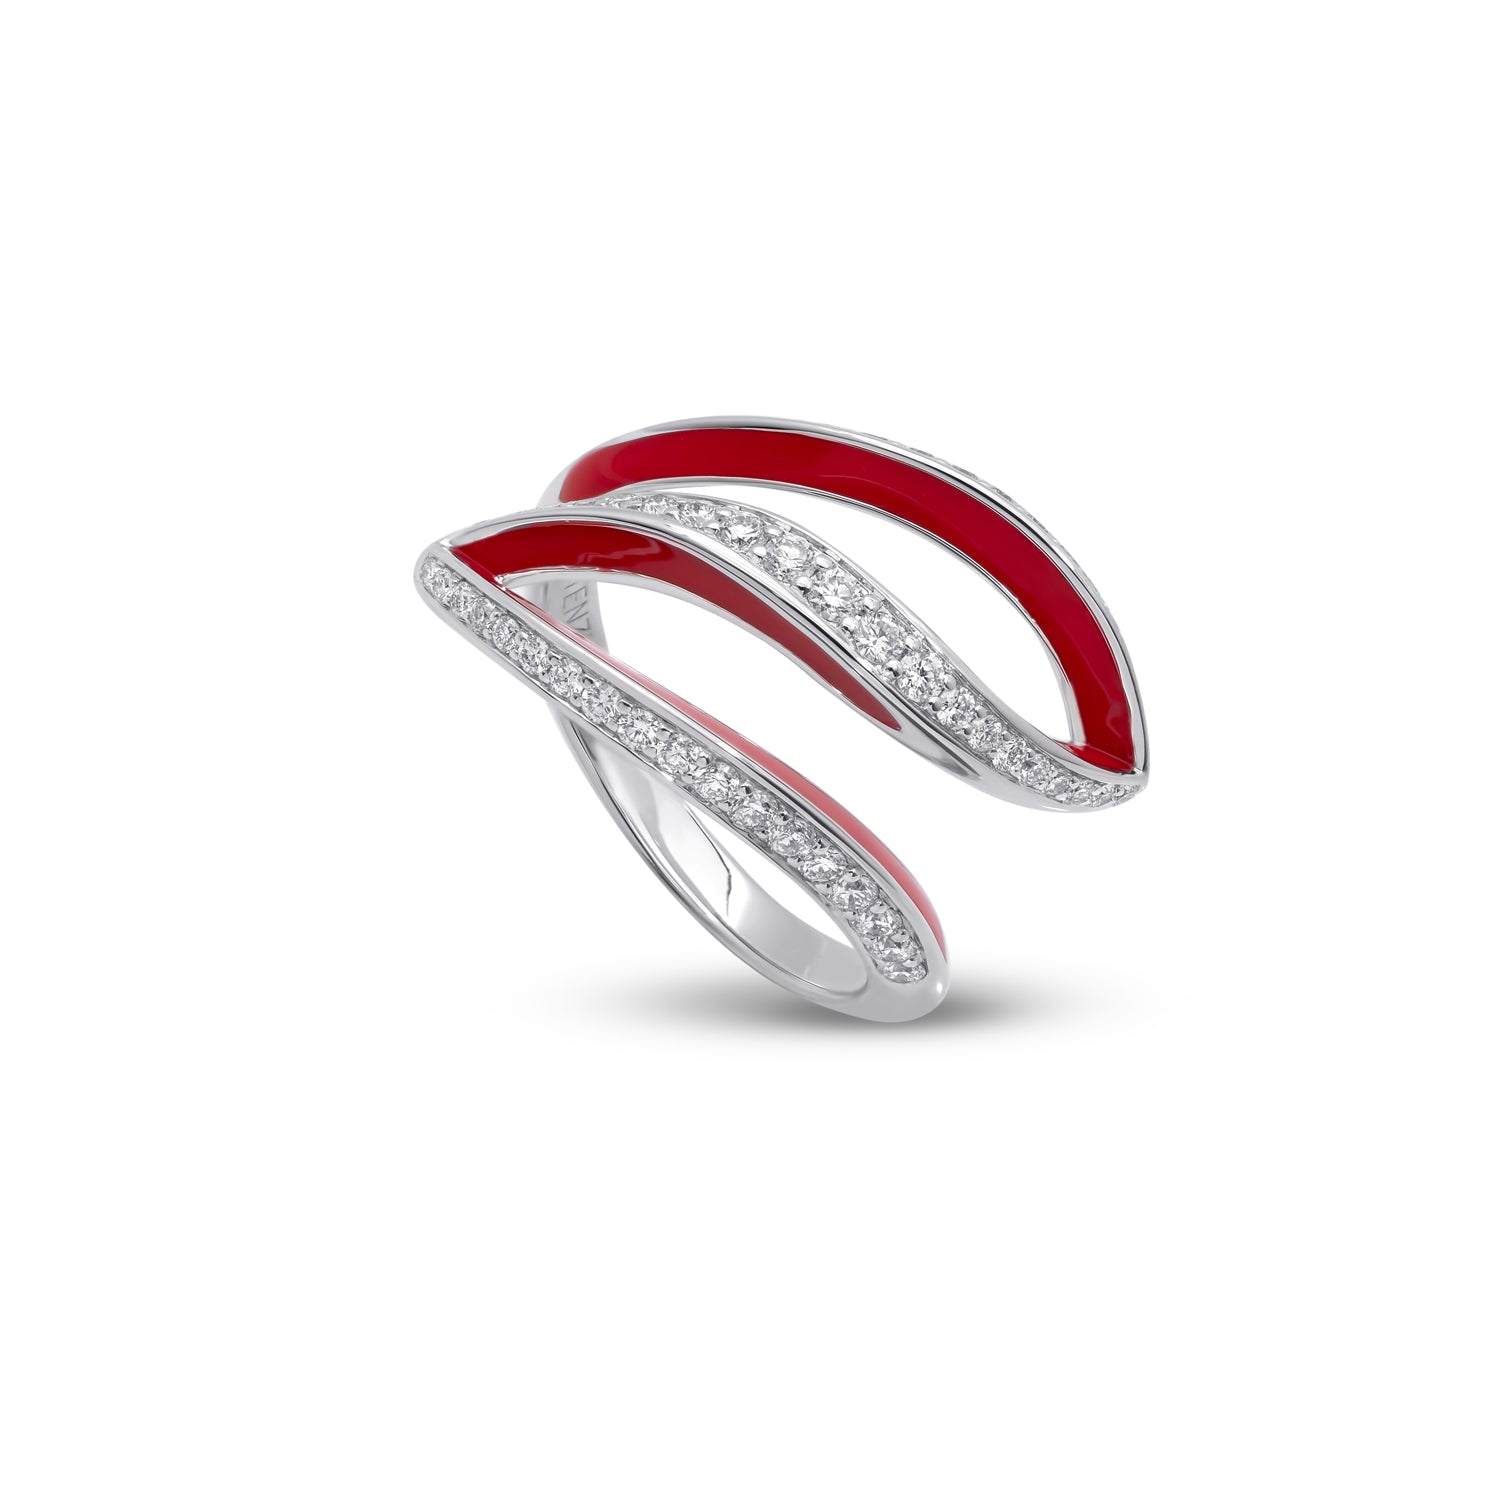 VIVA kleiner geschwungener Ring mit Diamanten und roter Emaille